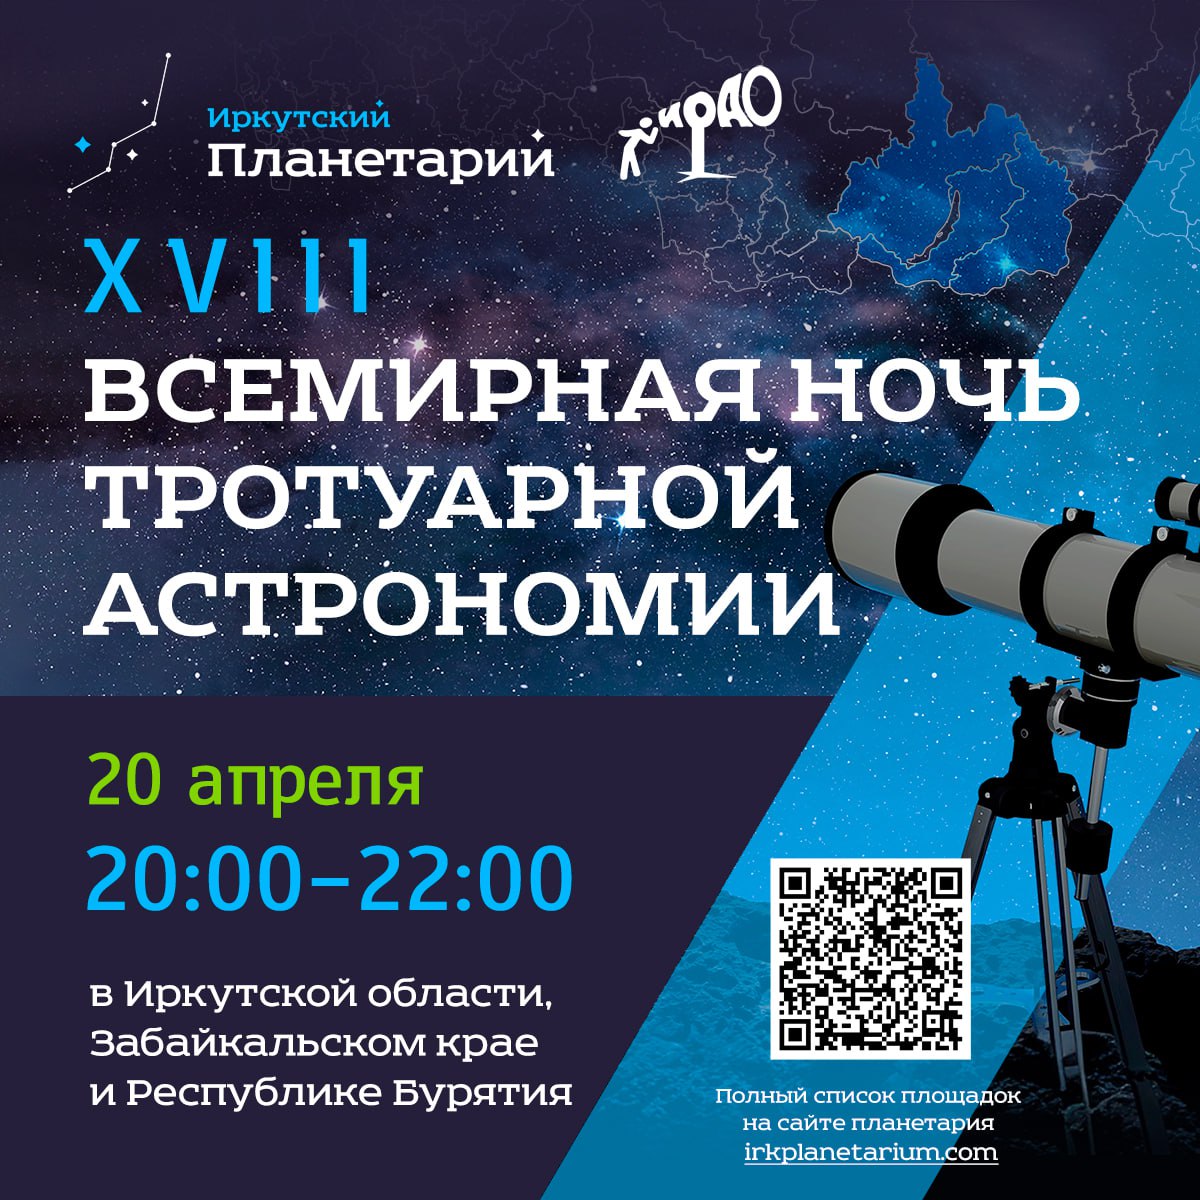 Идем смотреть на звезды! Вечер тротуарной астрономии пройдет в Иркутске 20 апреля